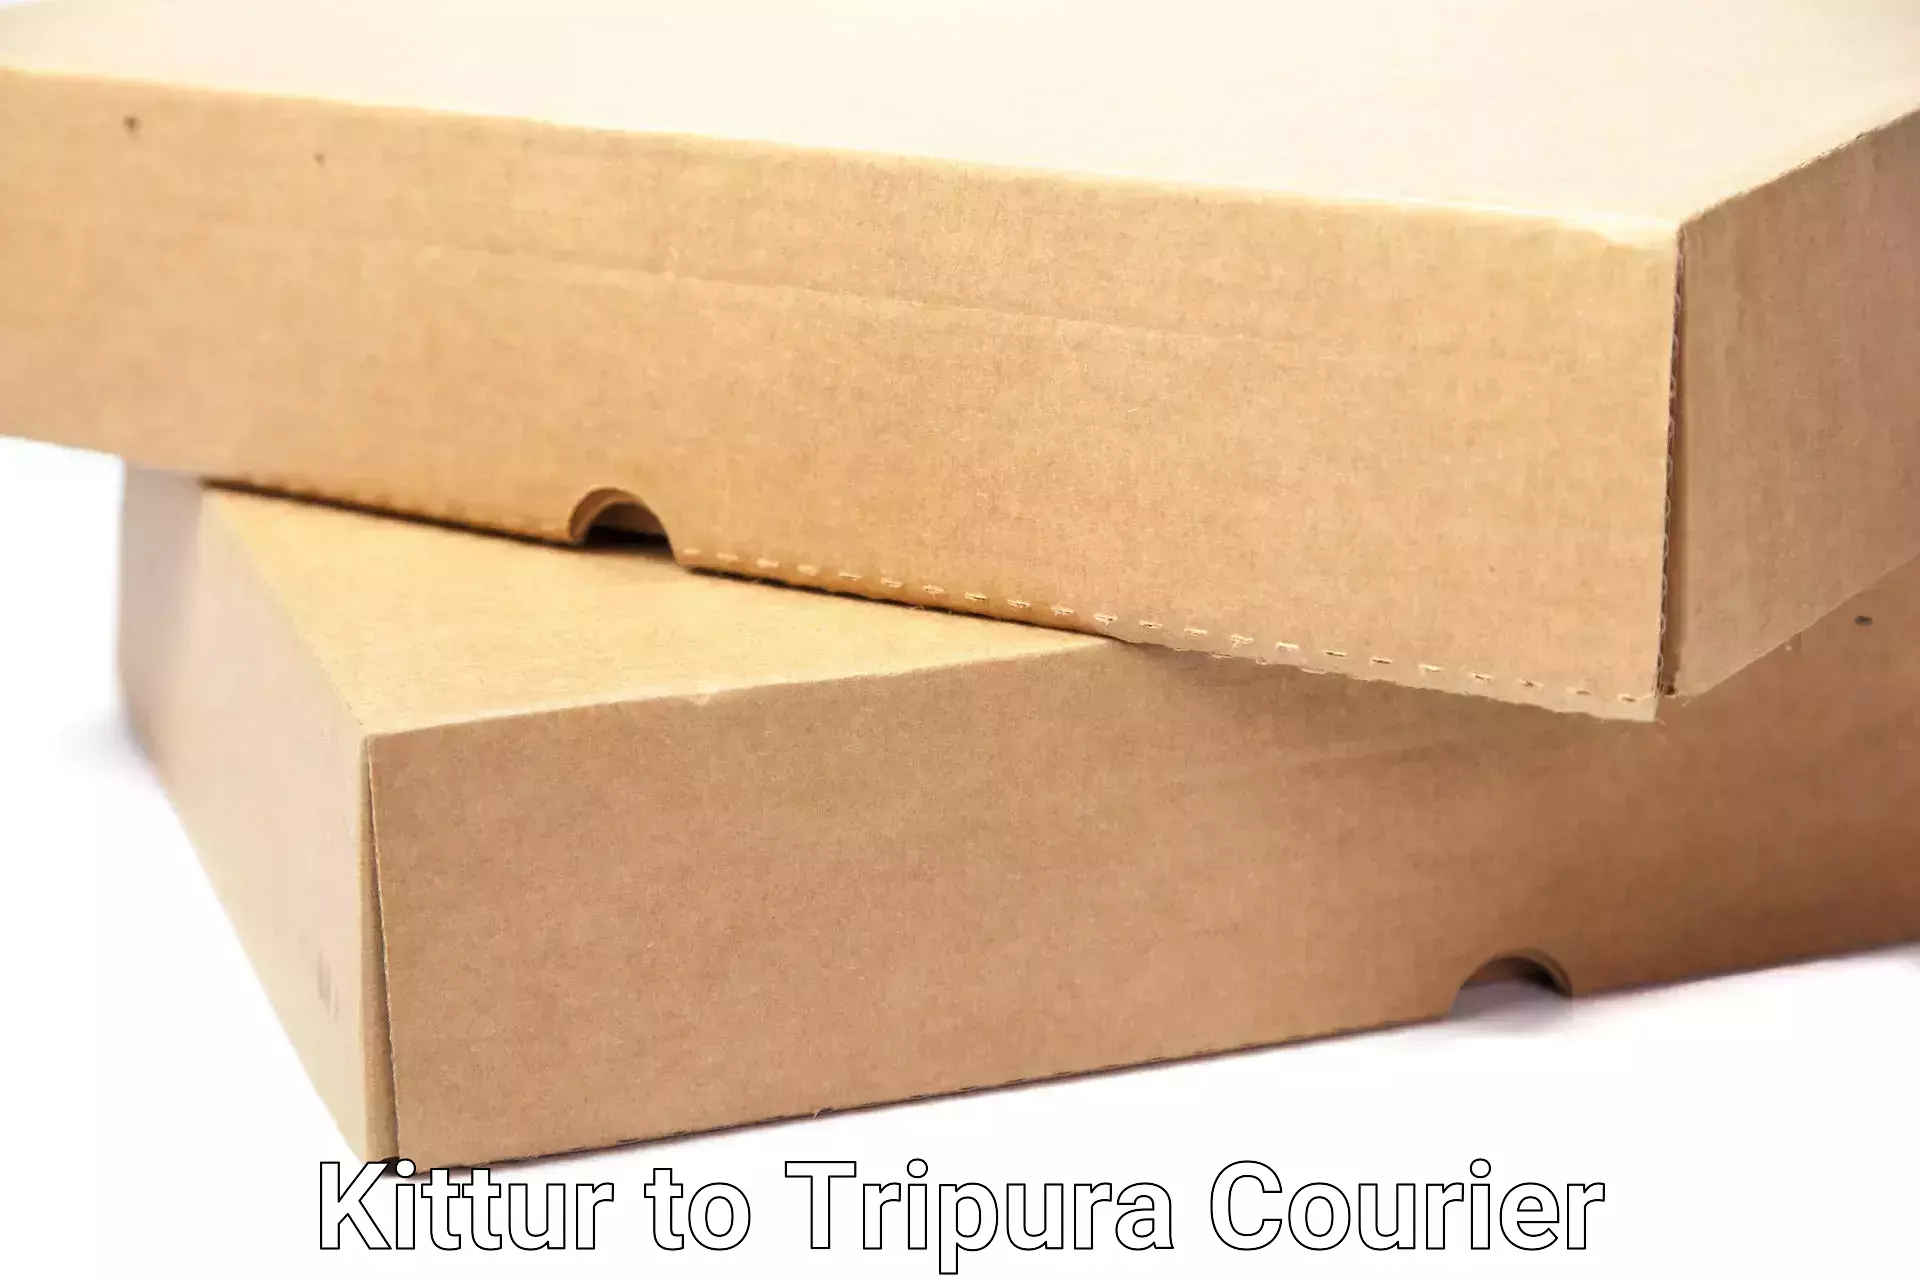 Full-service household moving Kittur to Tripura